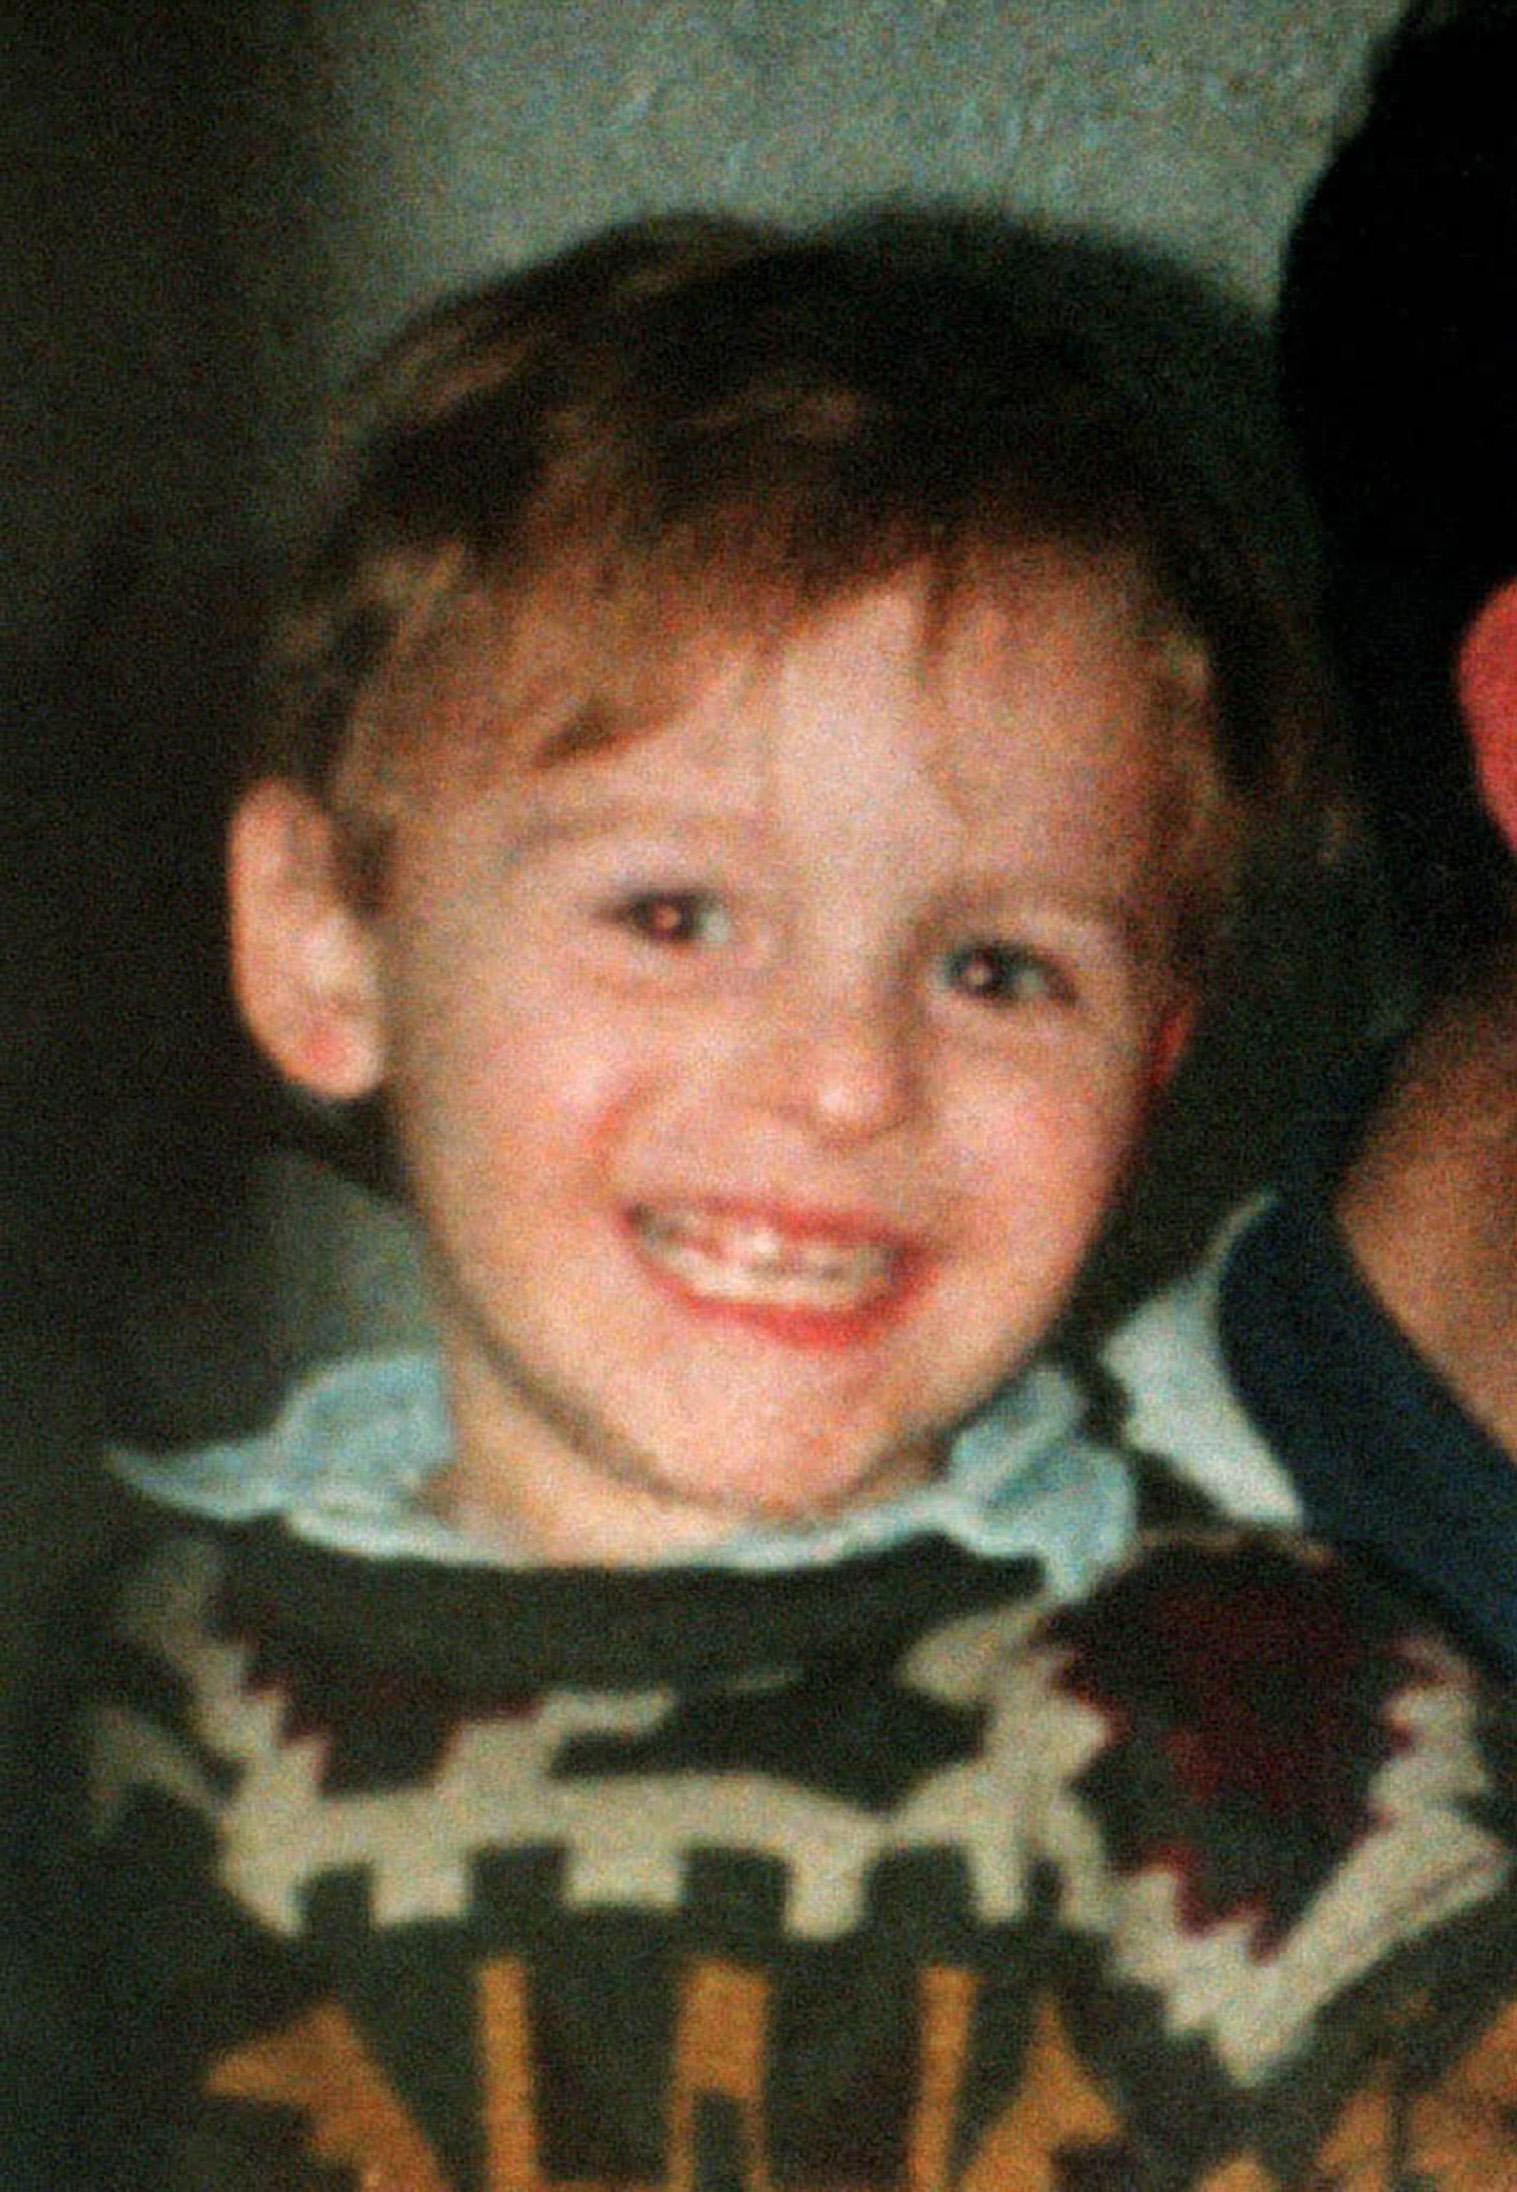 James Bulger wurde 1993 von Venables ermordet. Der Vater des Kleinkindes, Ralph, sagte, er könne „freier atmen“, nachdem sein Antrag auf Bewährung gescheitert war